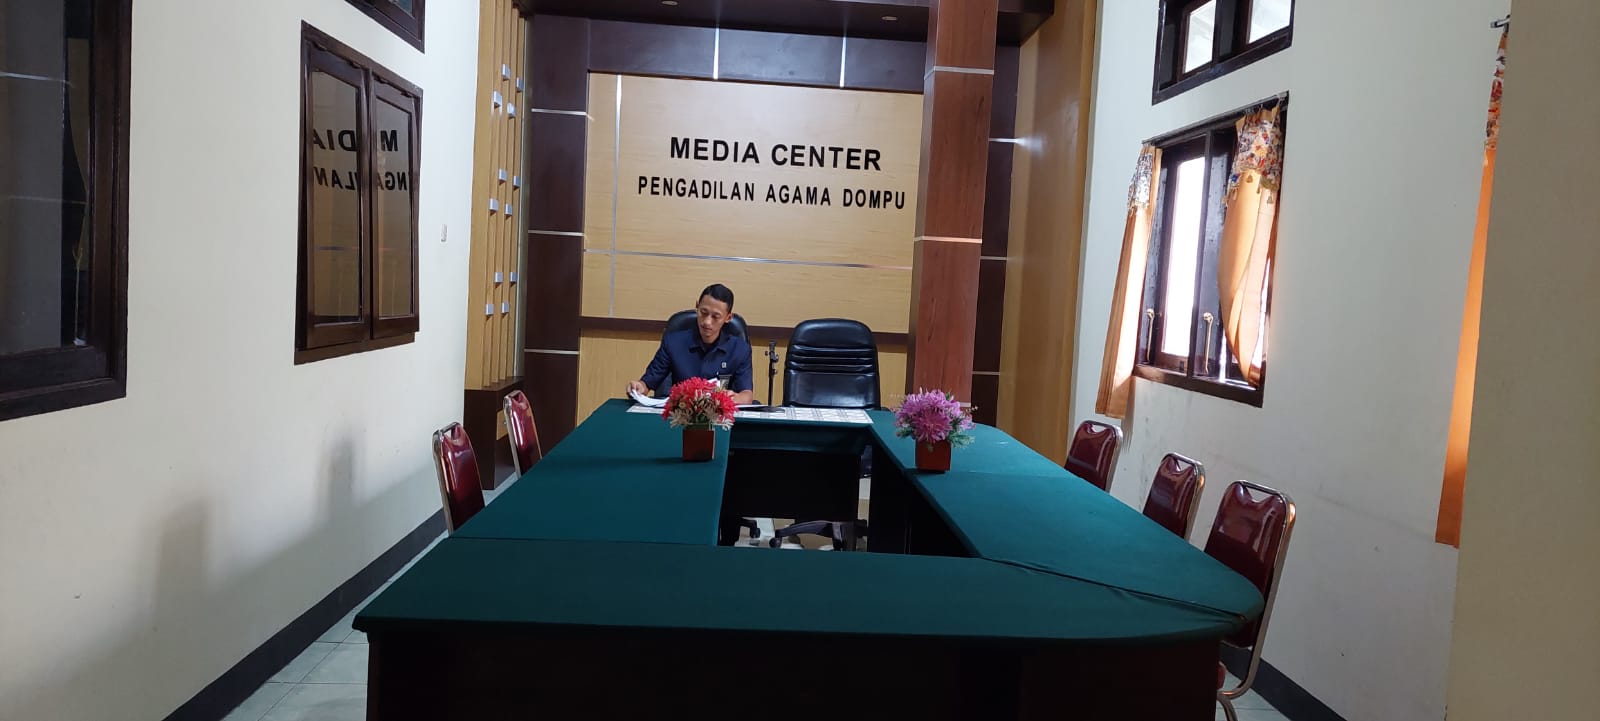 Media Center